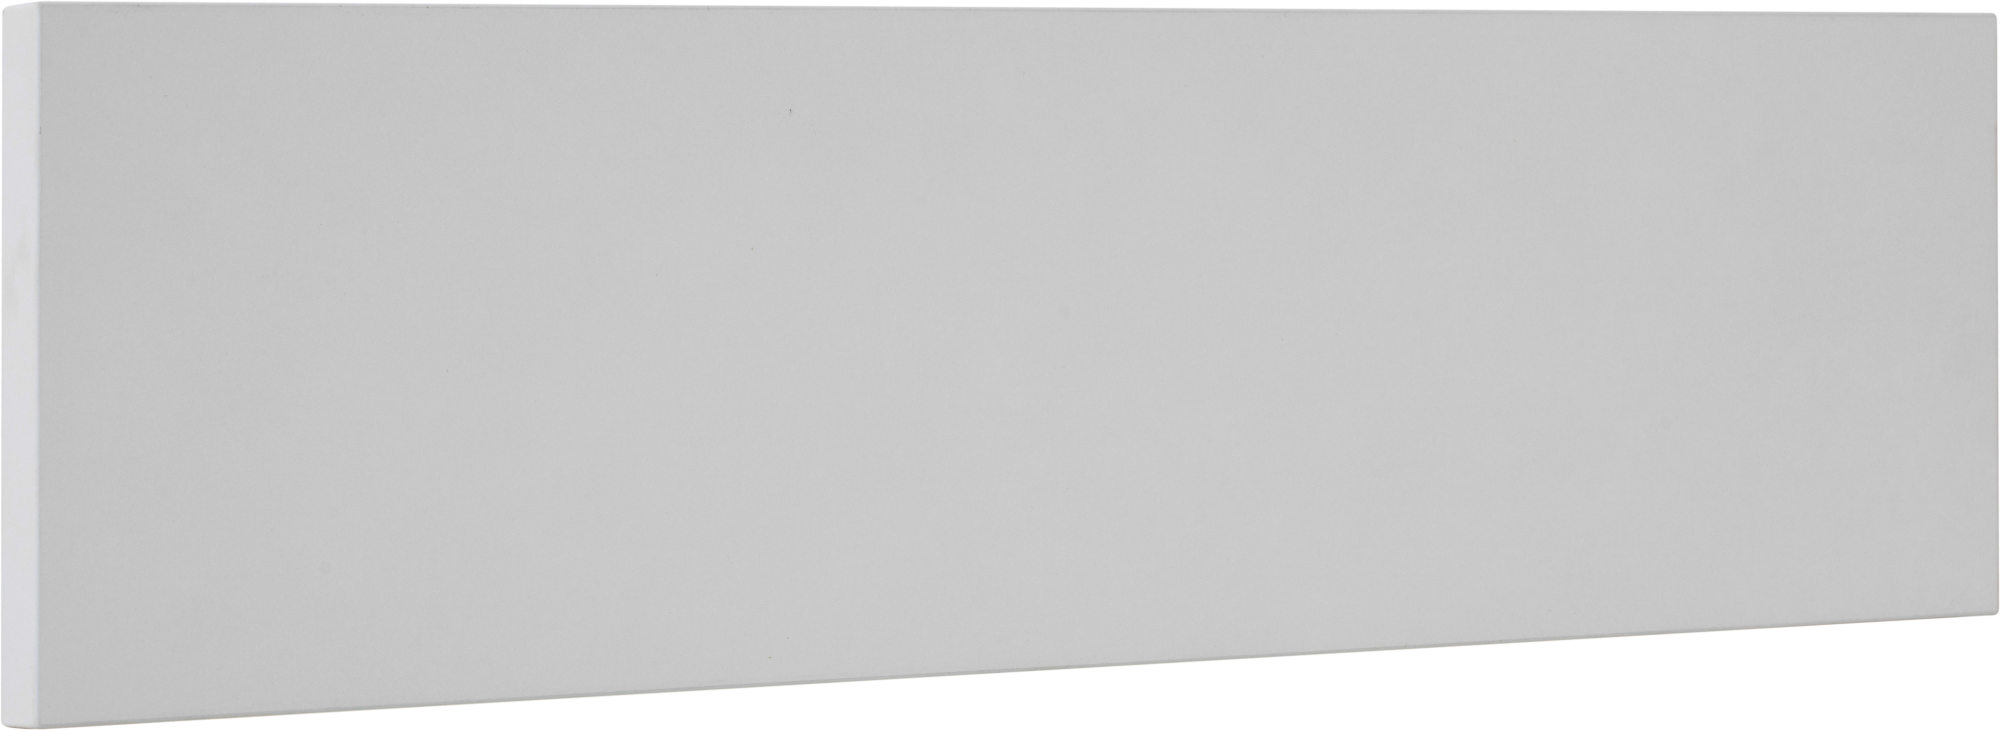 Regleta hor/lw de cocina atenas blanco mate h 16.5 x 60 cm